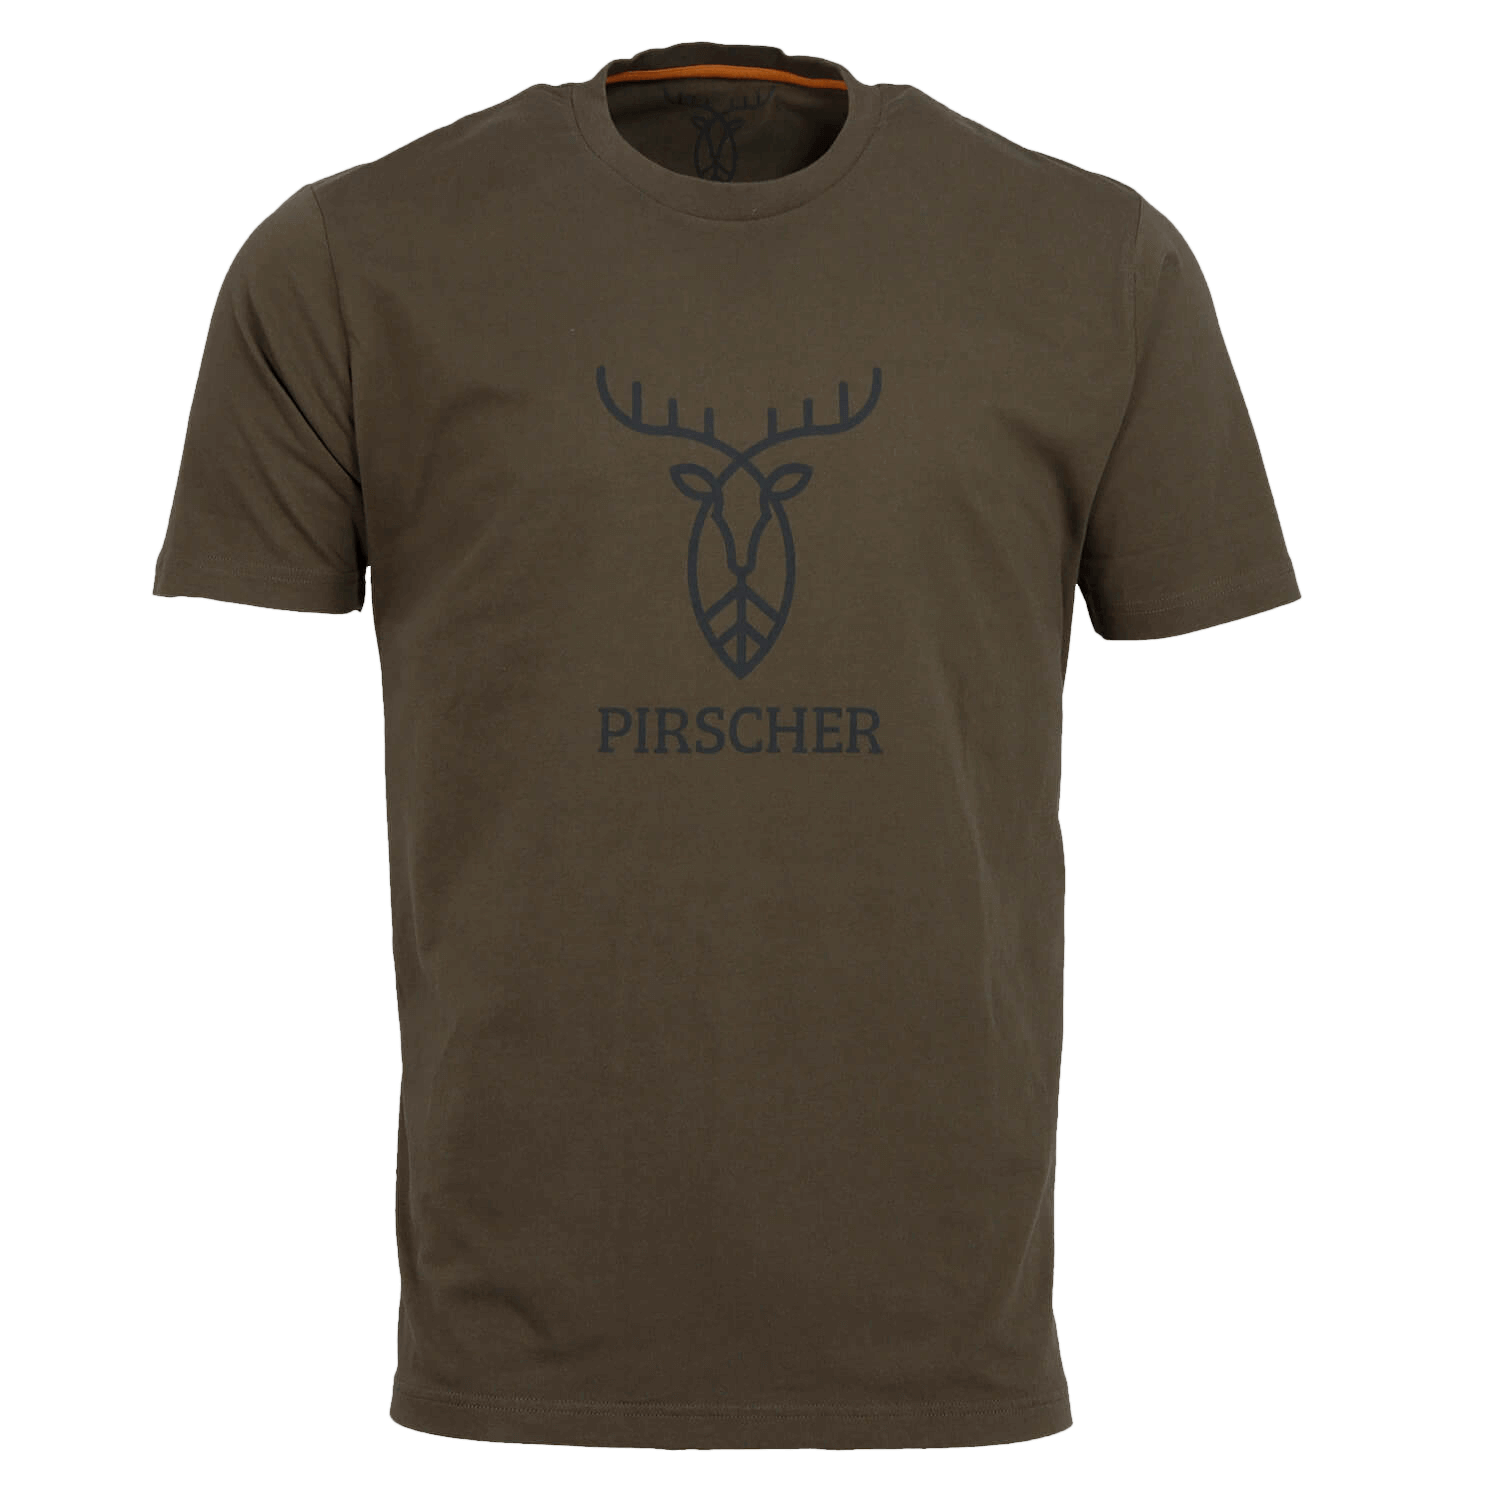  Pirscher Gear T-shirt-logo (bruin) - Cadeaus voor jagers